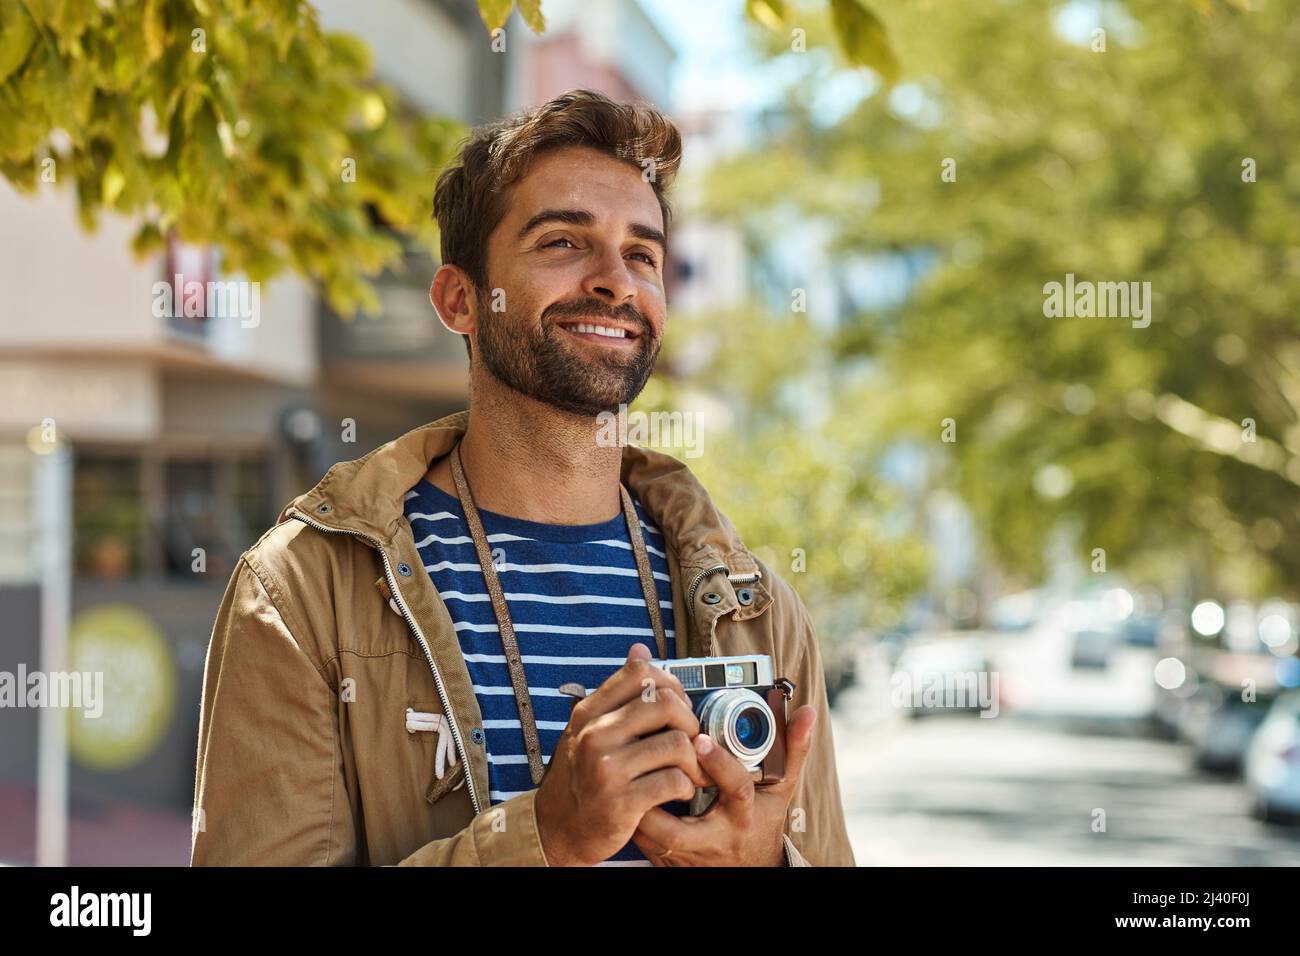 Seine Kamera reist überall hin. Aufnahme eines glücklichen Touristen, der Fotos macht, während er eine fremde Stadt auf eigene Faust erkundet. Stockfoto